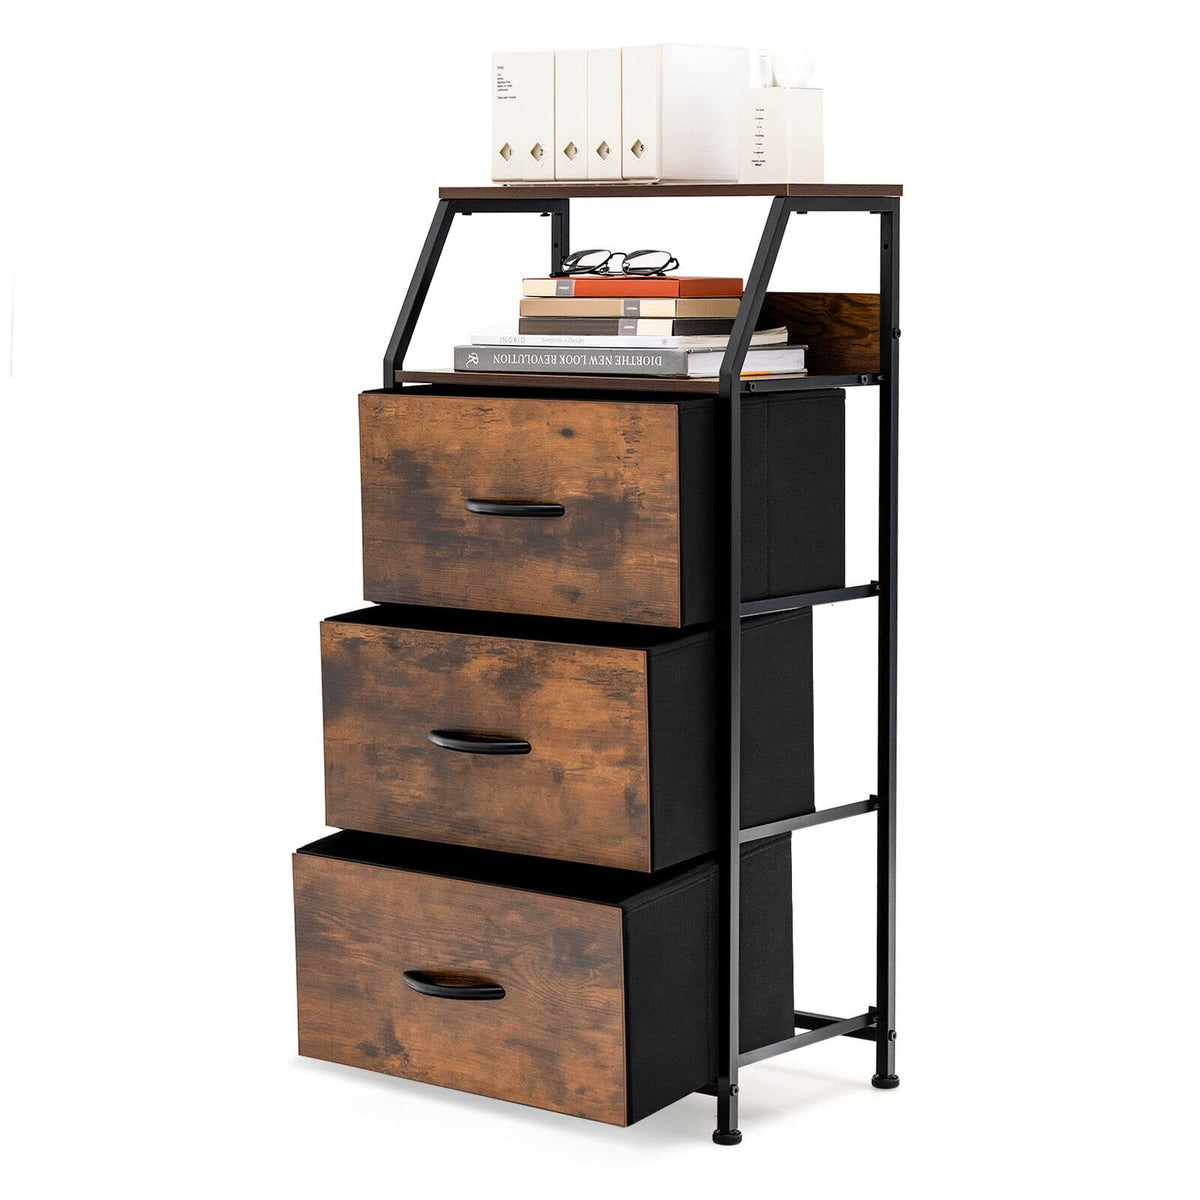 Giantex 3 Chest of Drawers Industrial Storage Cabinet Dresser Organizer Wooden